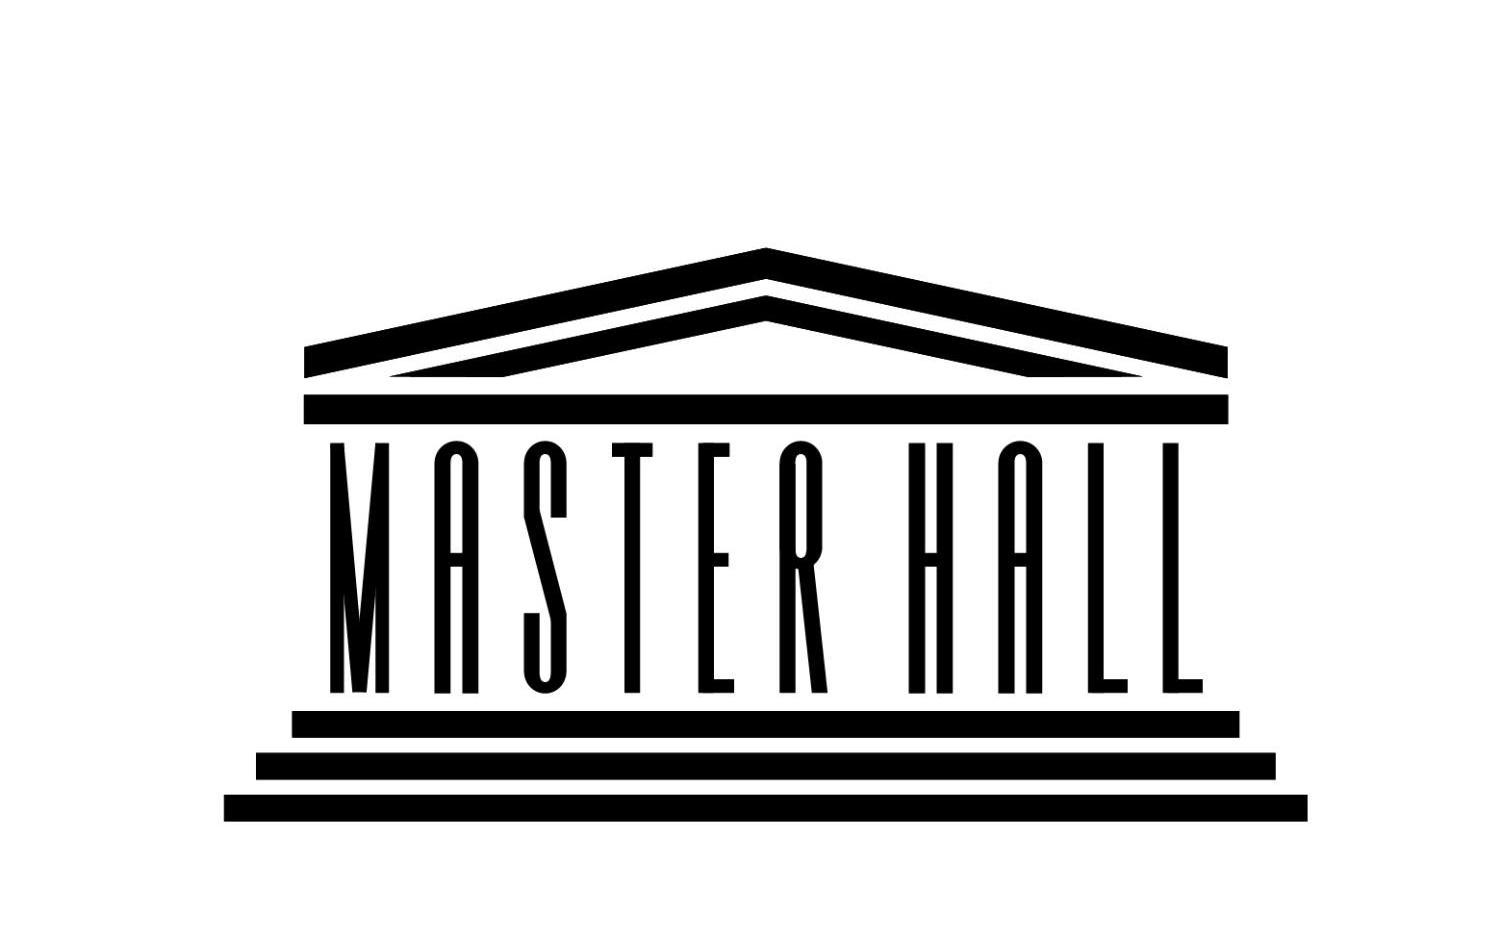 玛莎大学logo图片